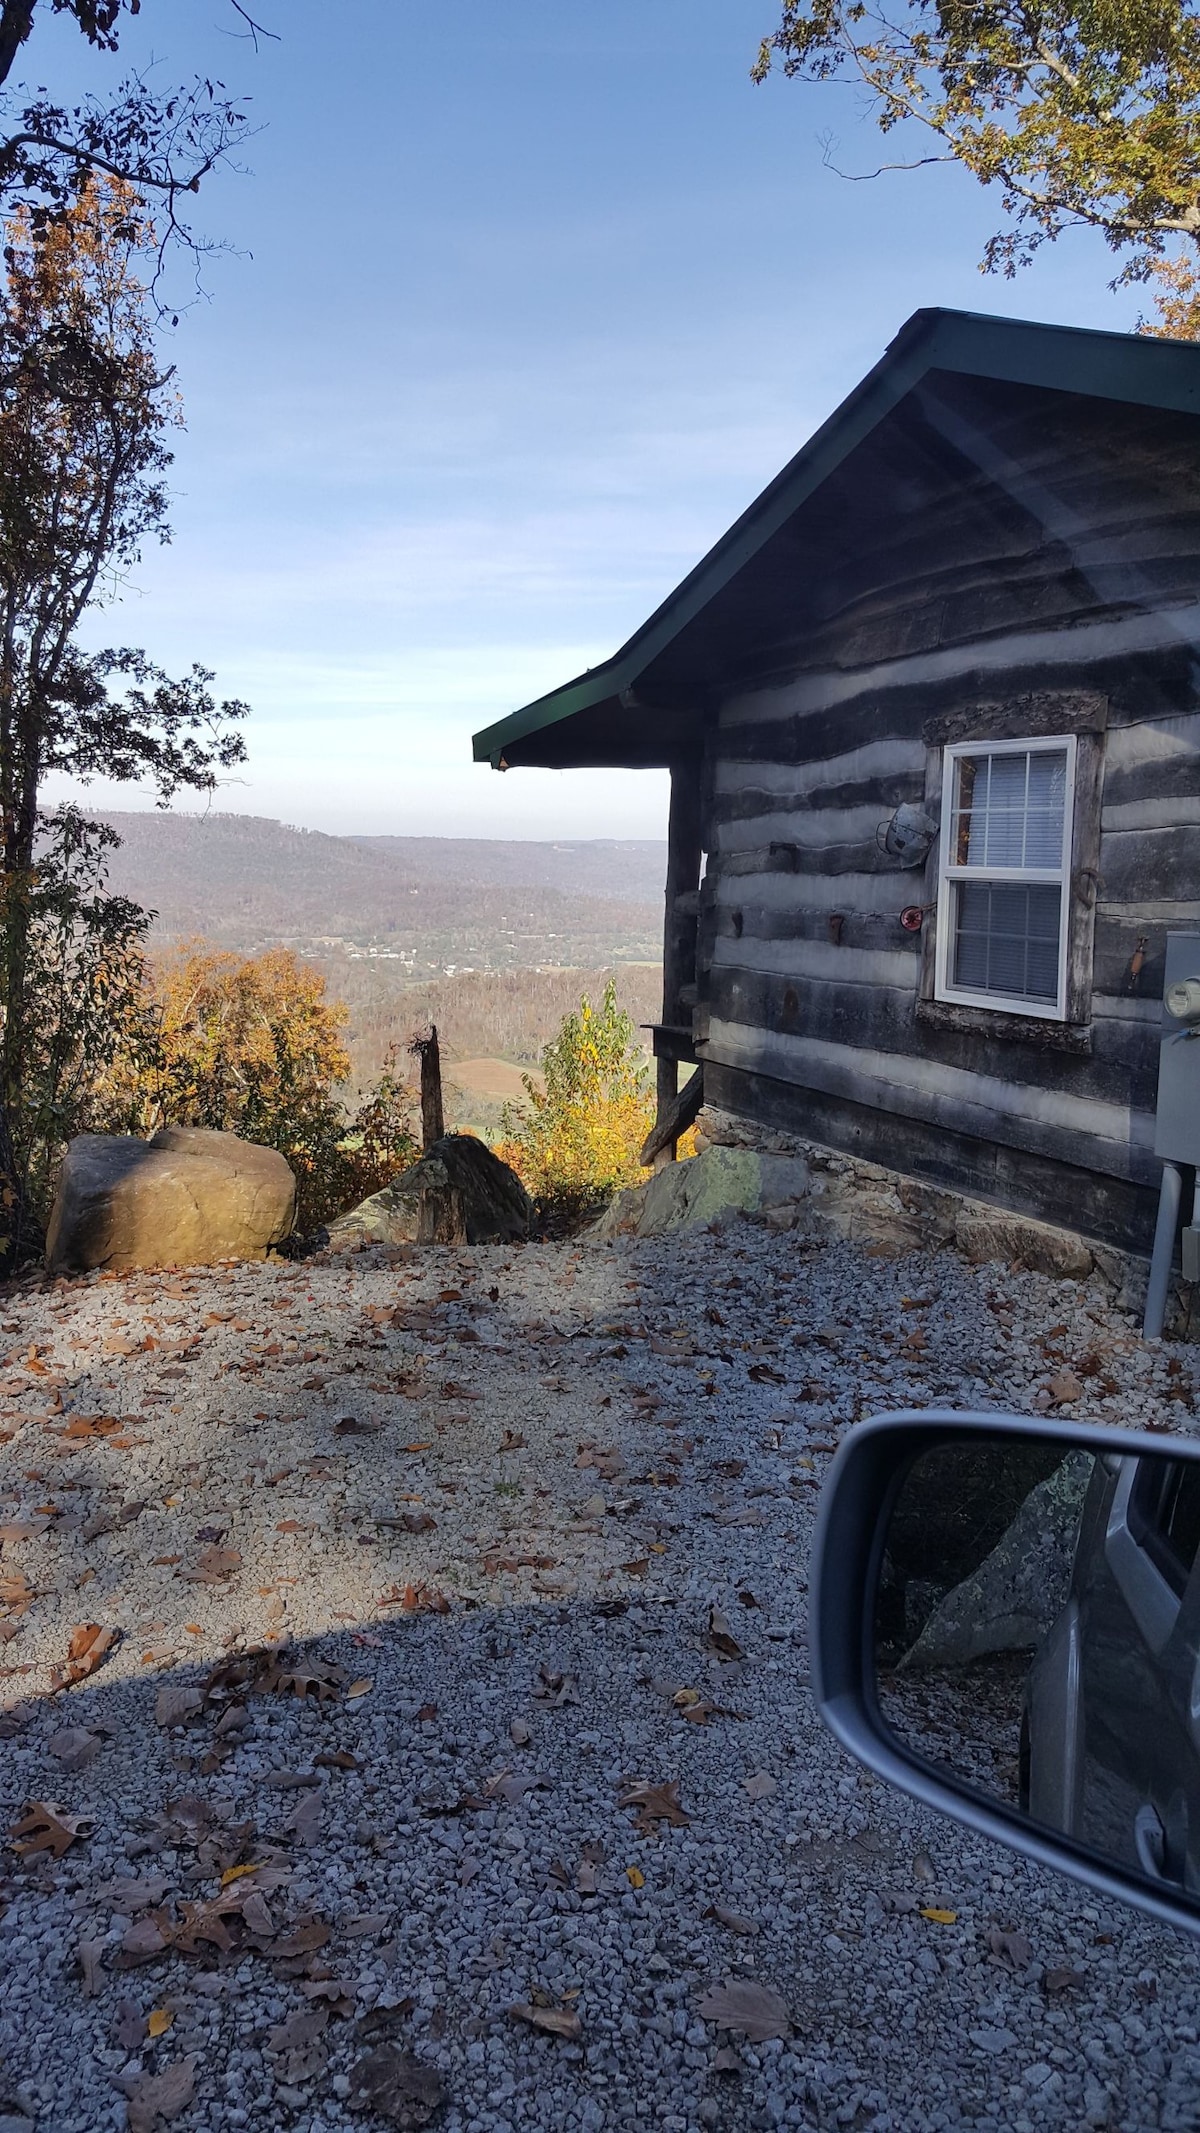 Blake's cabin